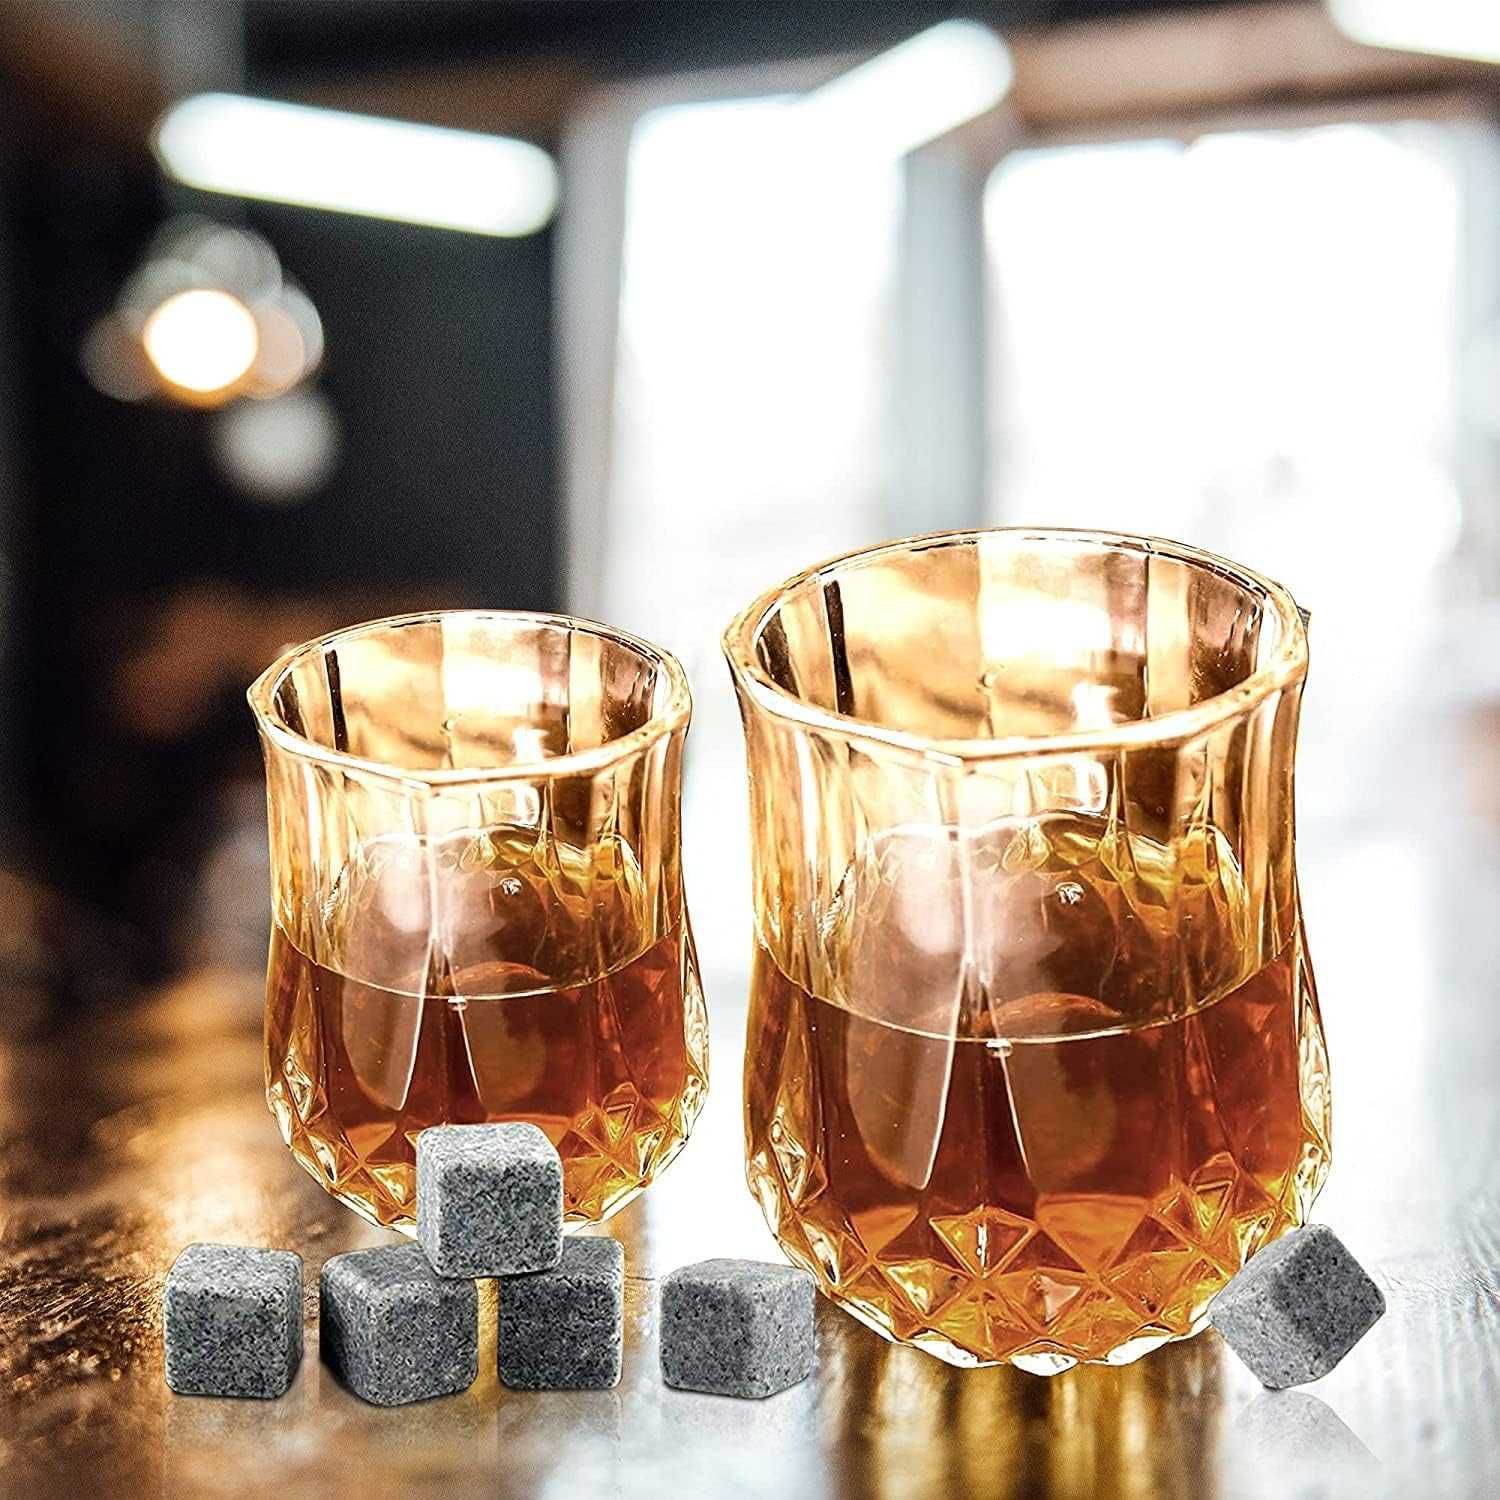 ZESTAW Prezentowy Kamienie Do Whisky + 2 Szklanki